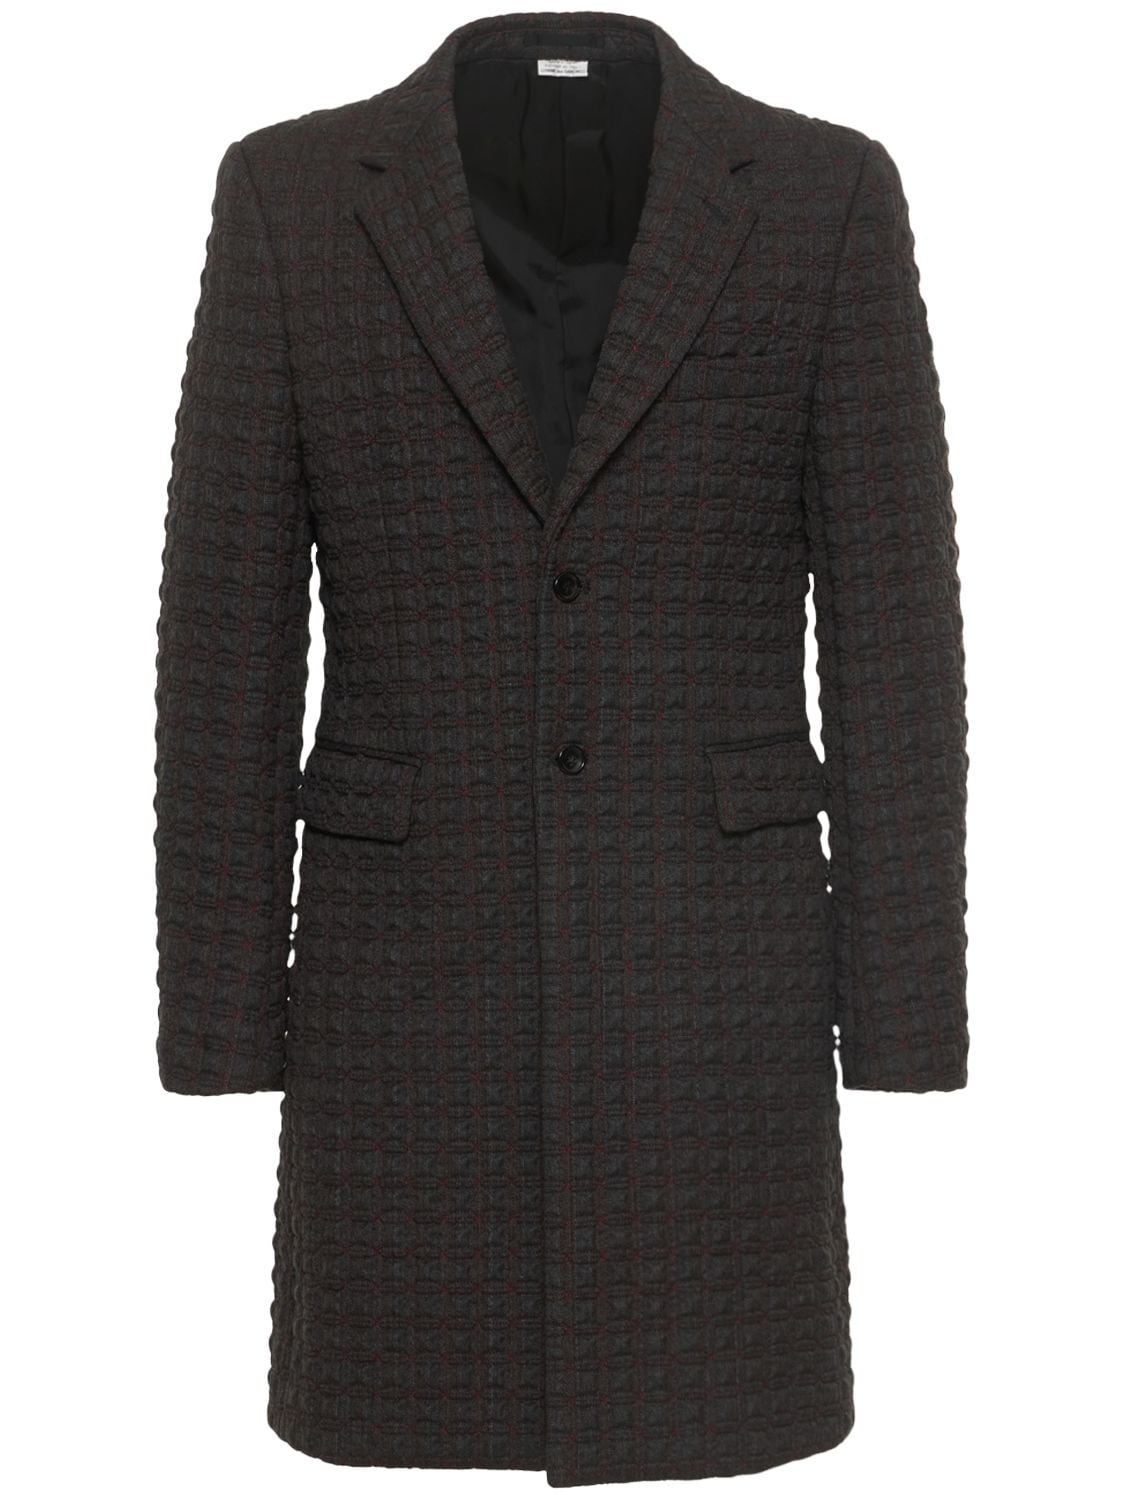 Wool Herringbone Coat | The Hoxton Trend